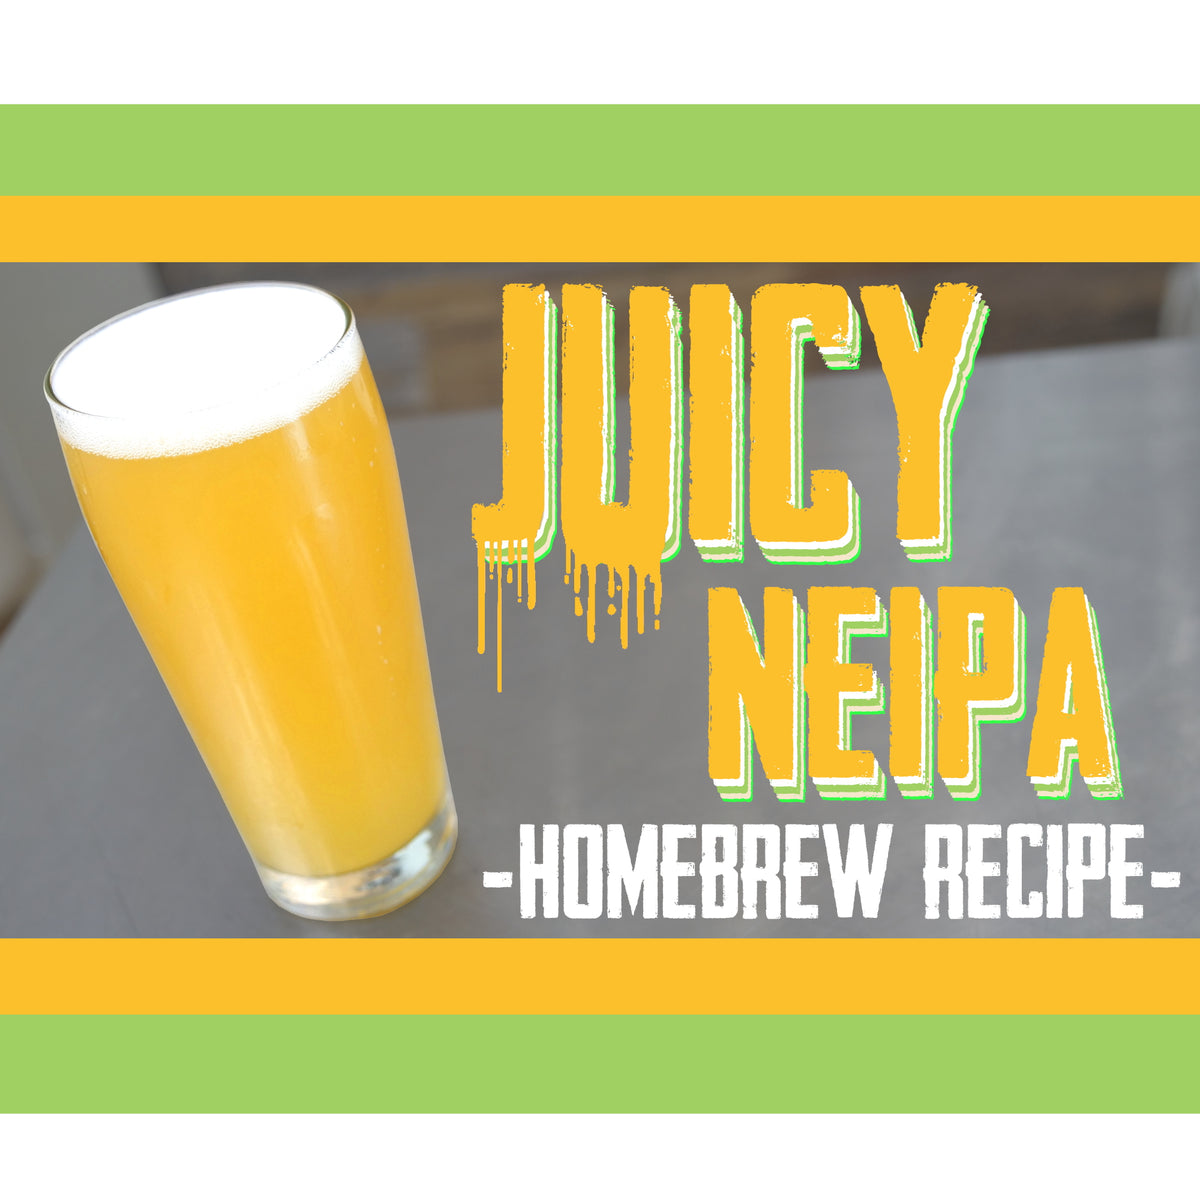 Juicy NEIPA (New England IPA) Recipe